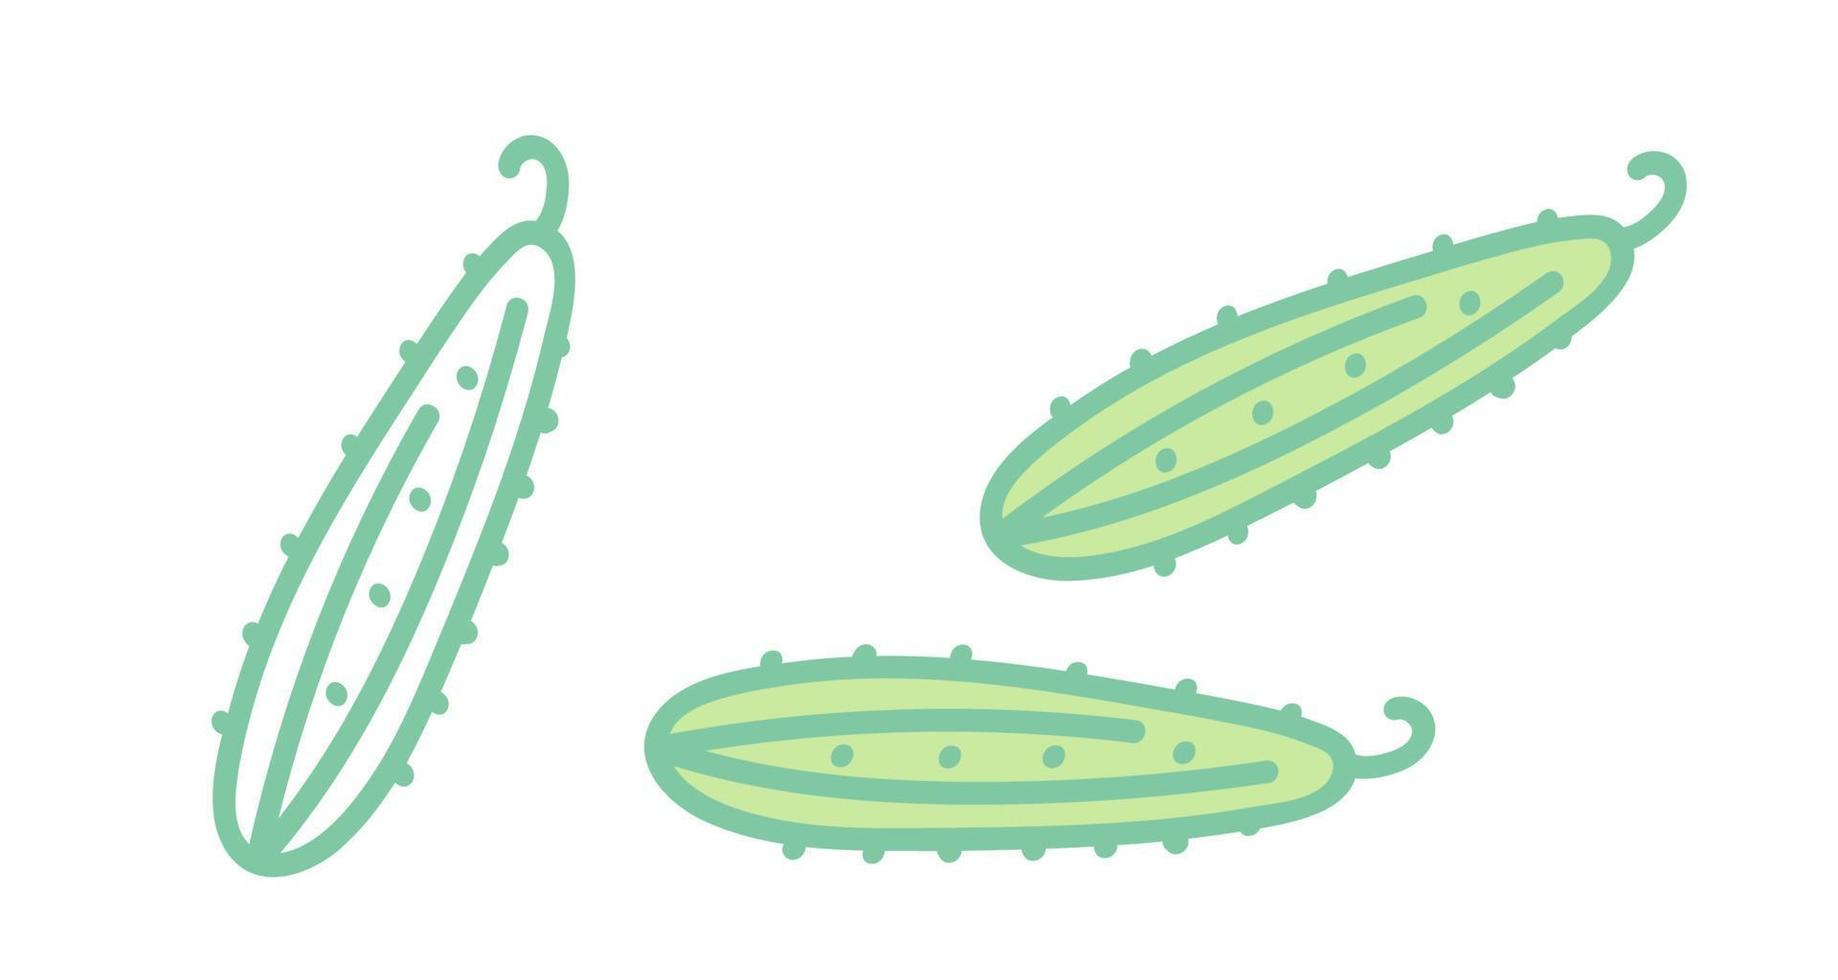 vector reeks pictogrammen van komkommers. iillustration van komkommer. hand- tekening groenten.